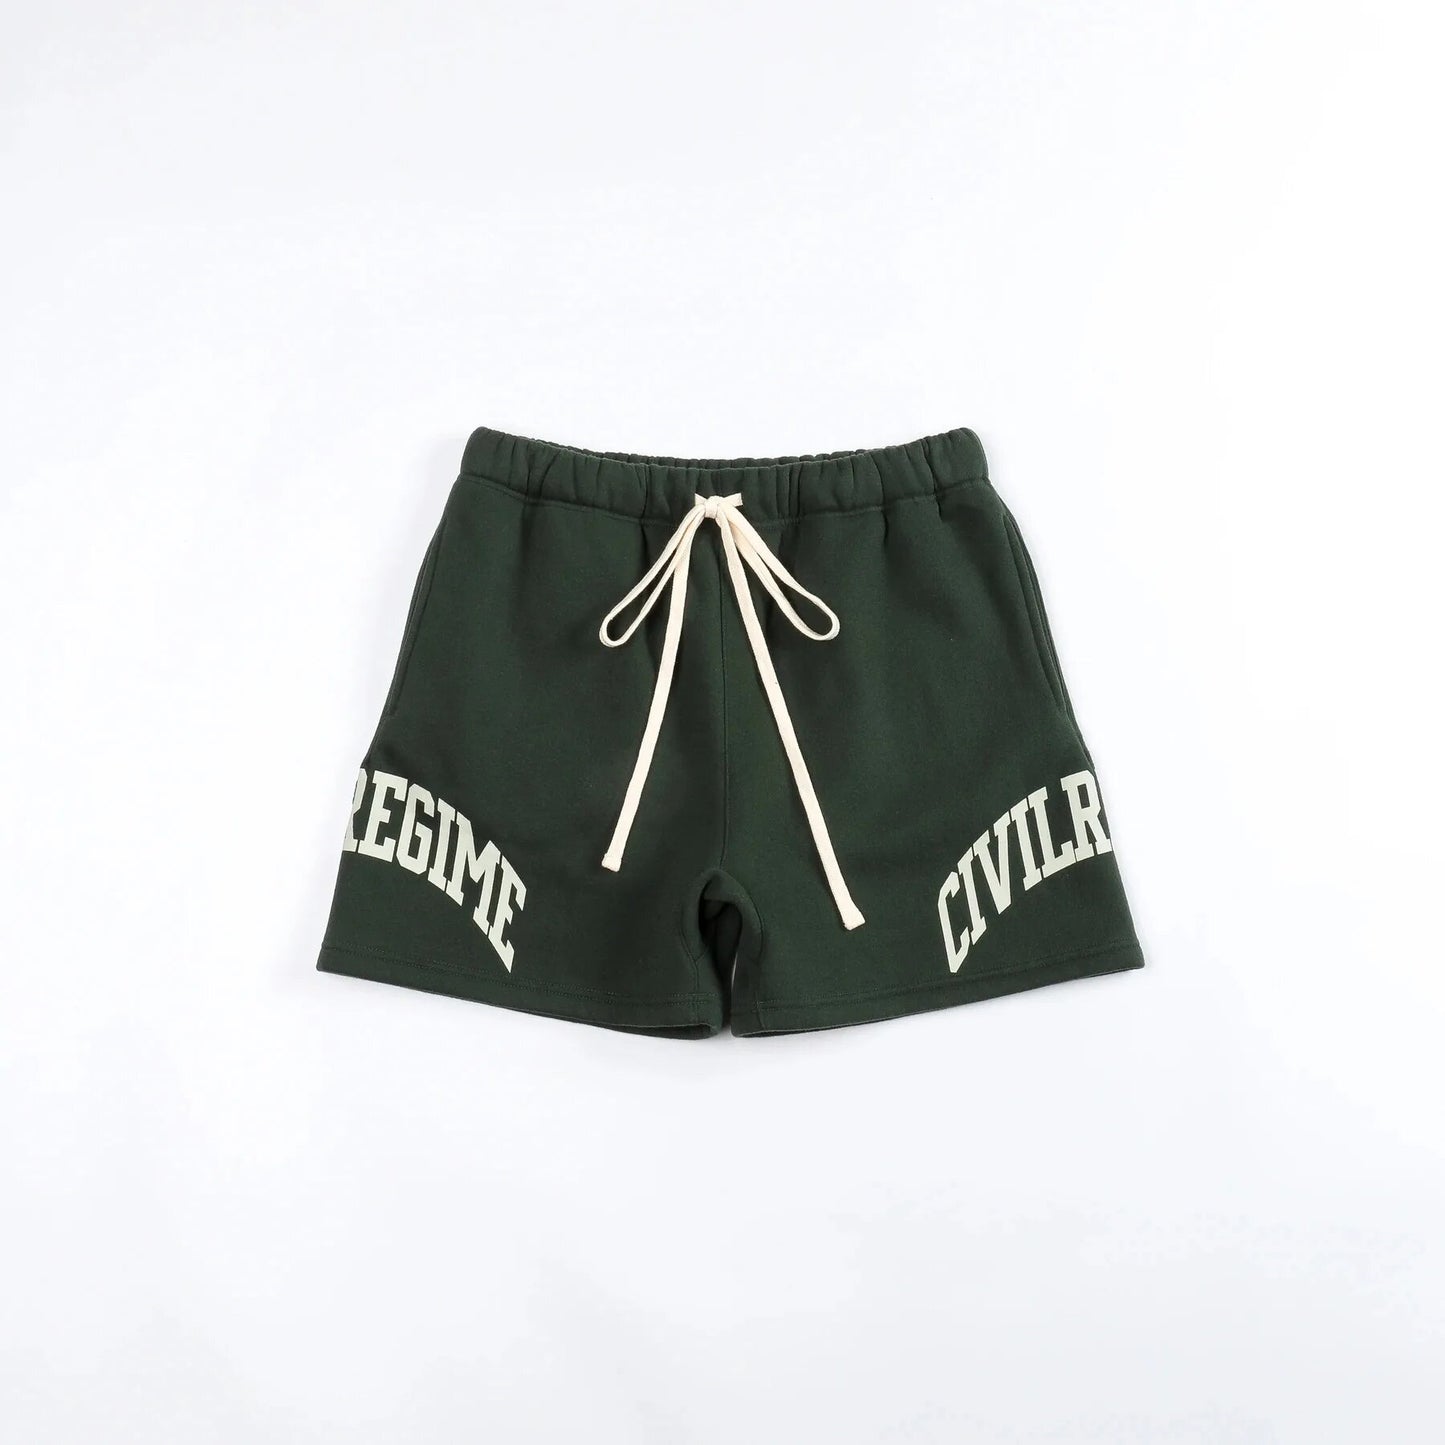 “Civil Regime” Mens Casual Shorts - Green